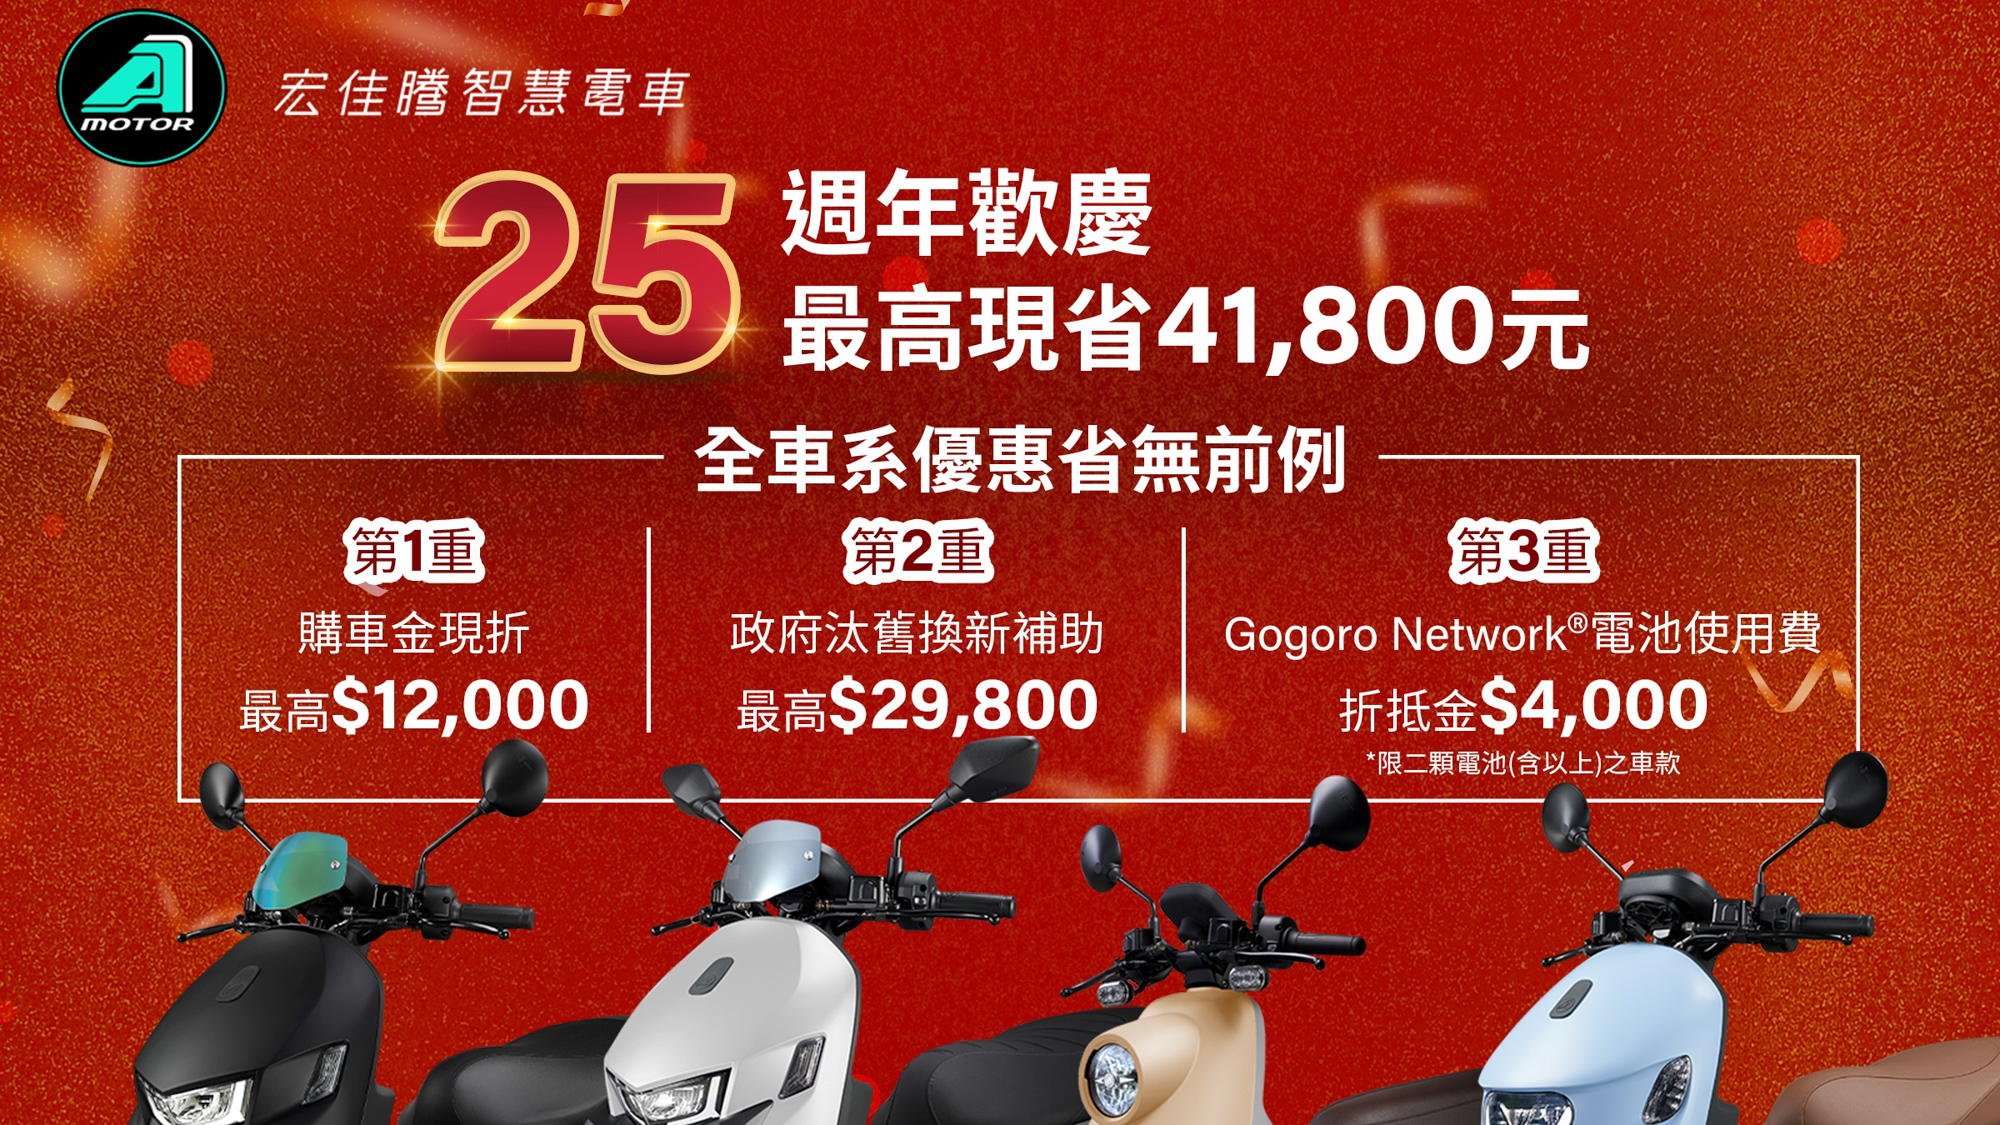 ▲ 宏佳騰慶 25 週年 購車最高省 41,800 元